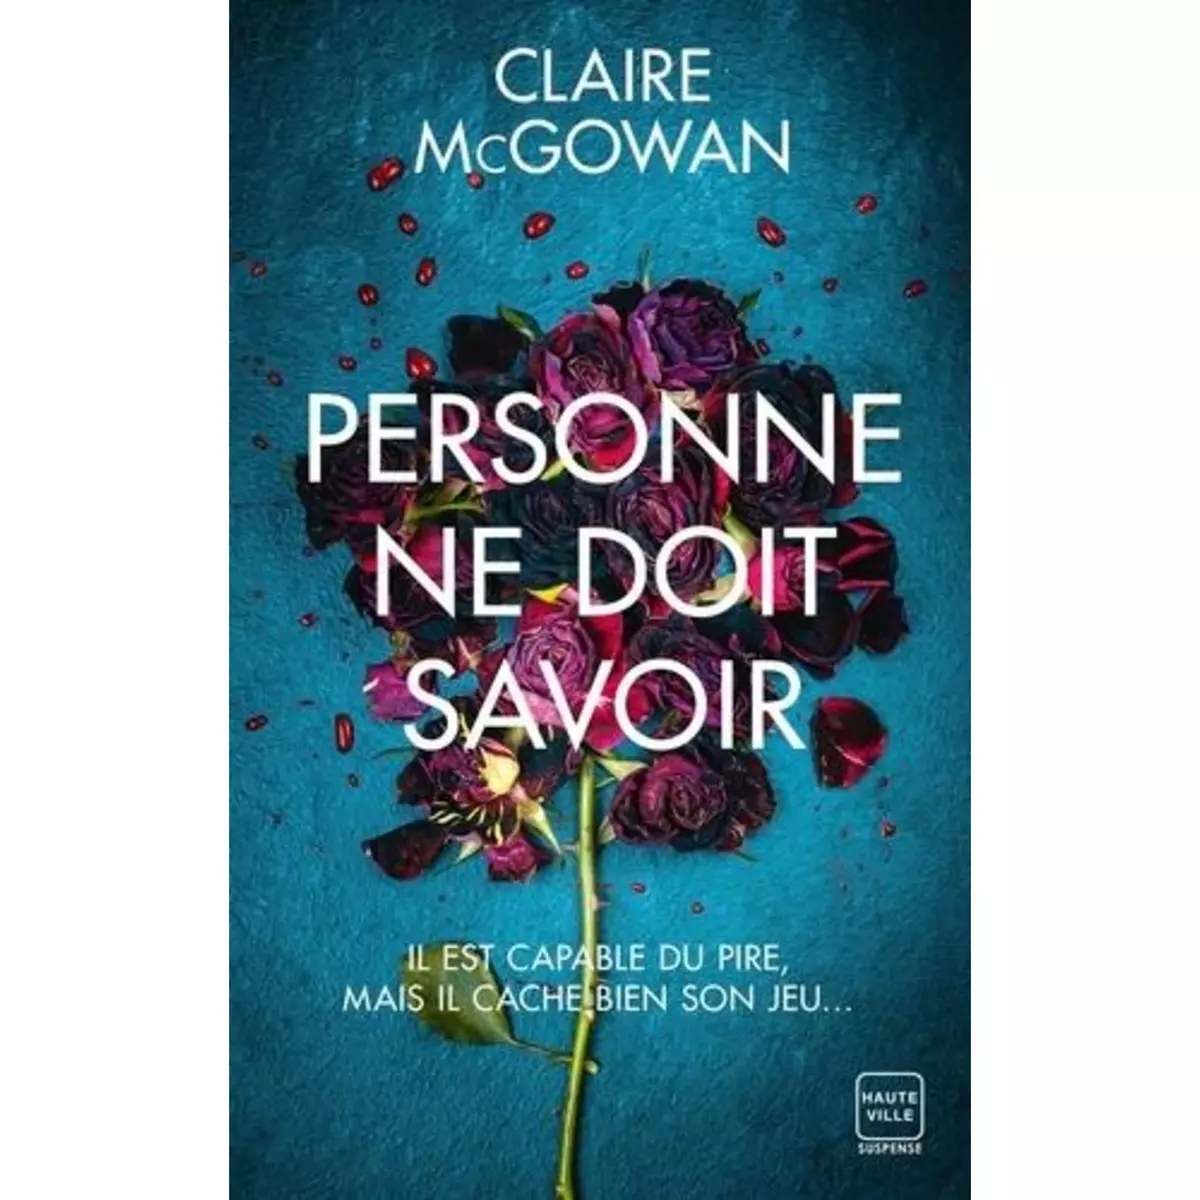  PERSONNE NE DOIT SAVOIR, McGowan Claire